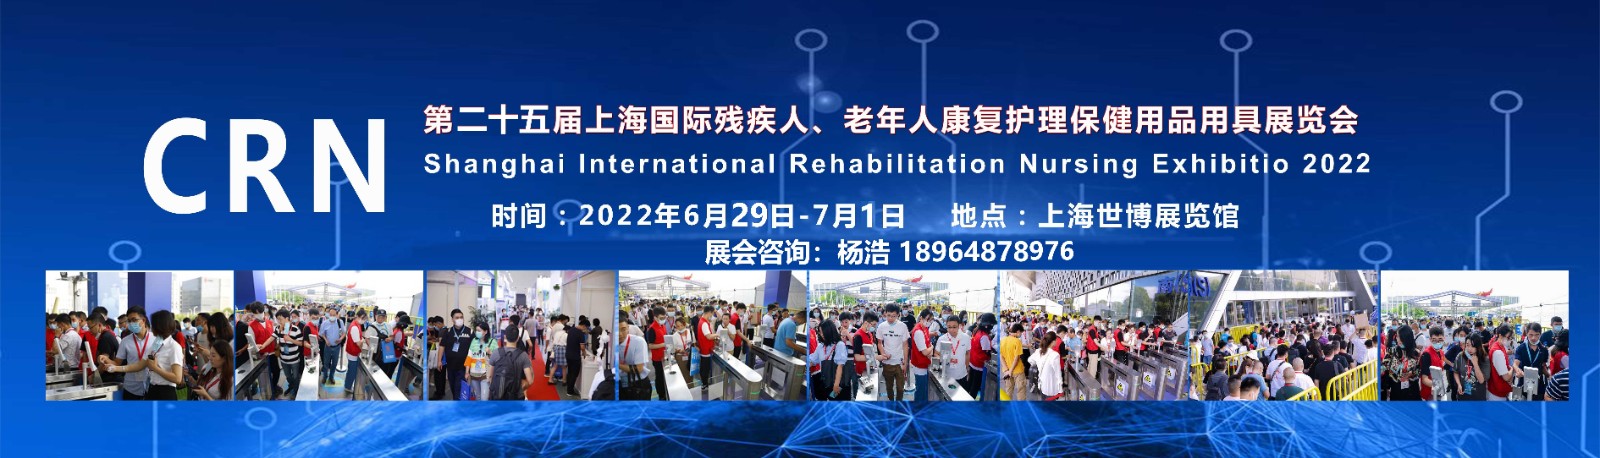 上海残疾人老年人康复护理用品展览会:快速对接项目负责人!